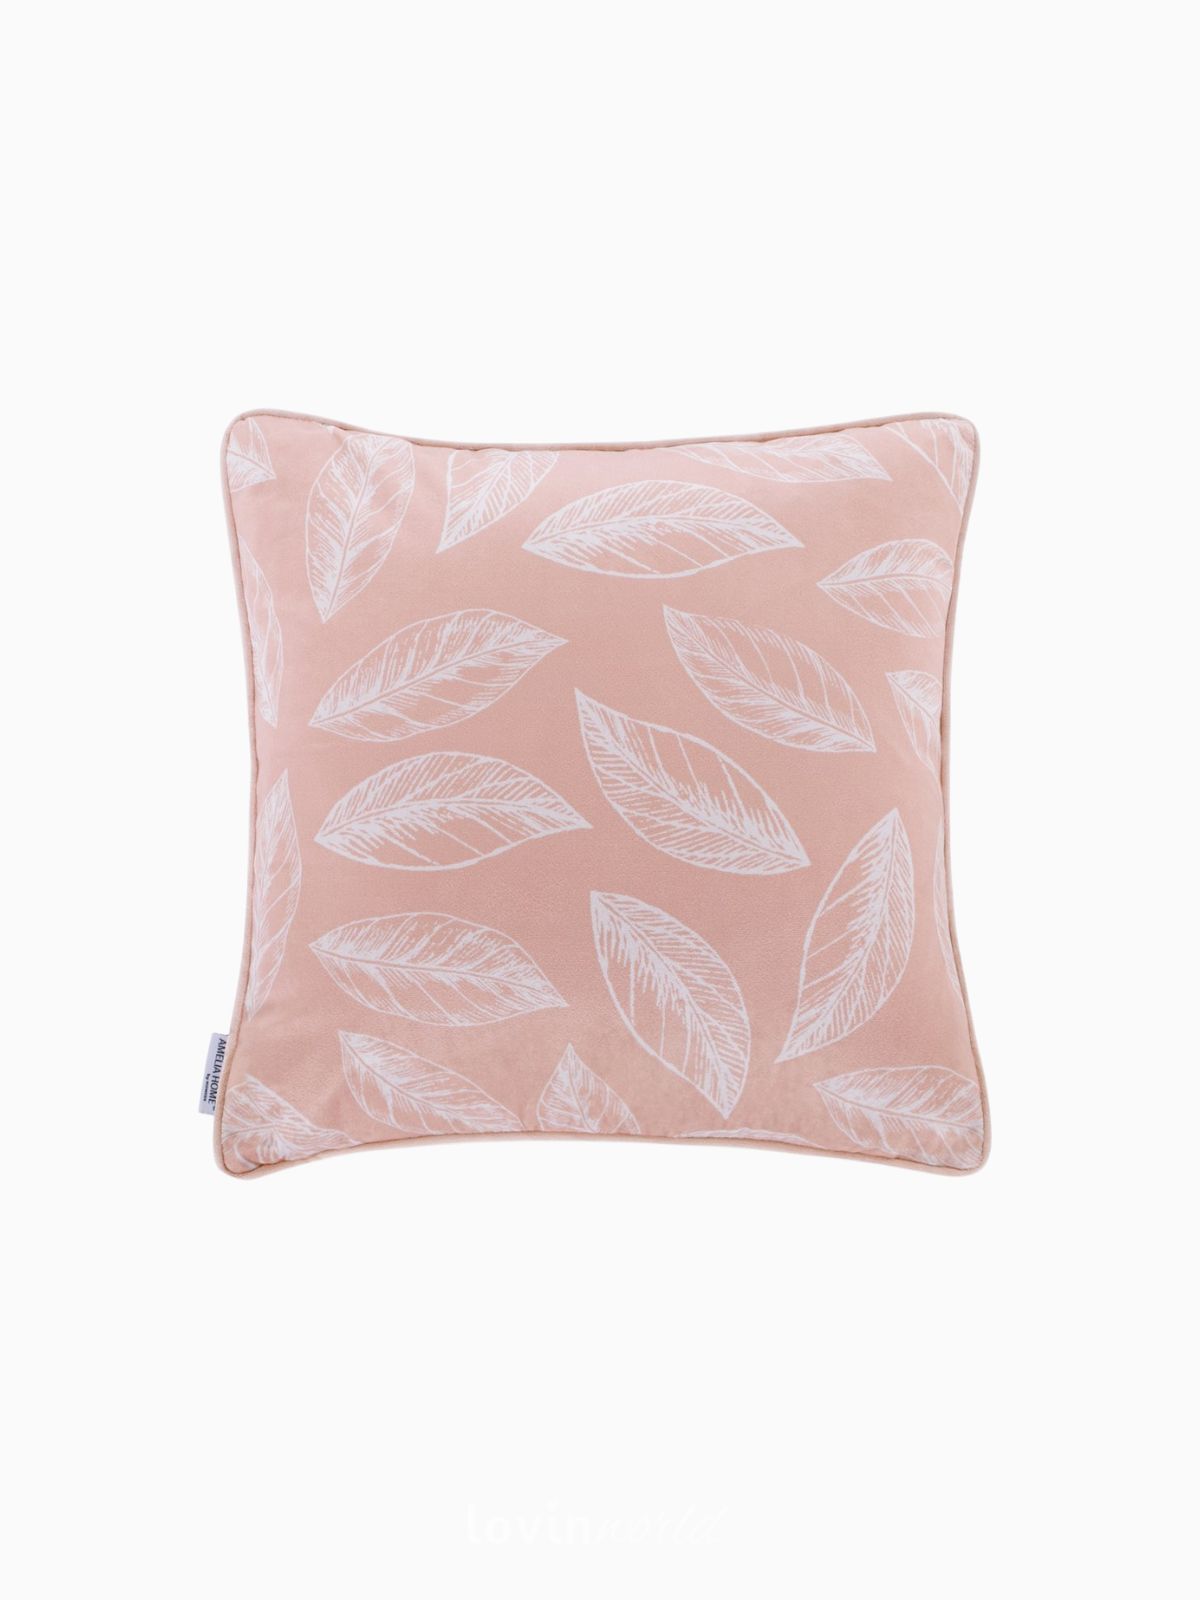 Cuscino decorativo in velluto Calm, colore rosa carne 45x45 cm.-1